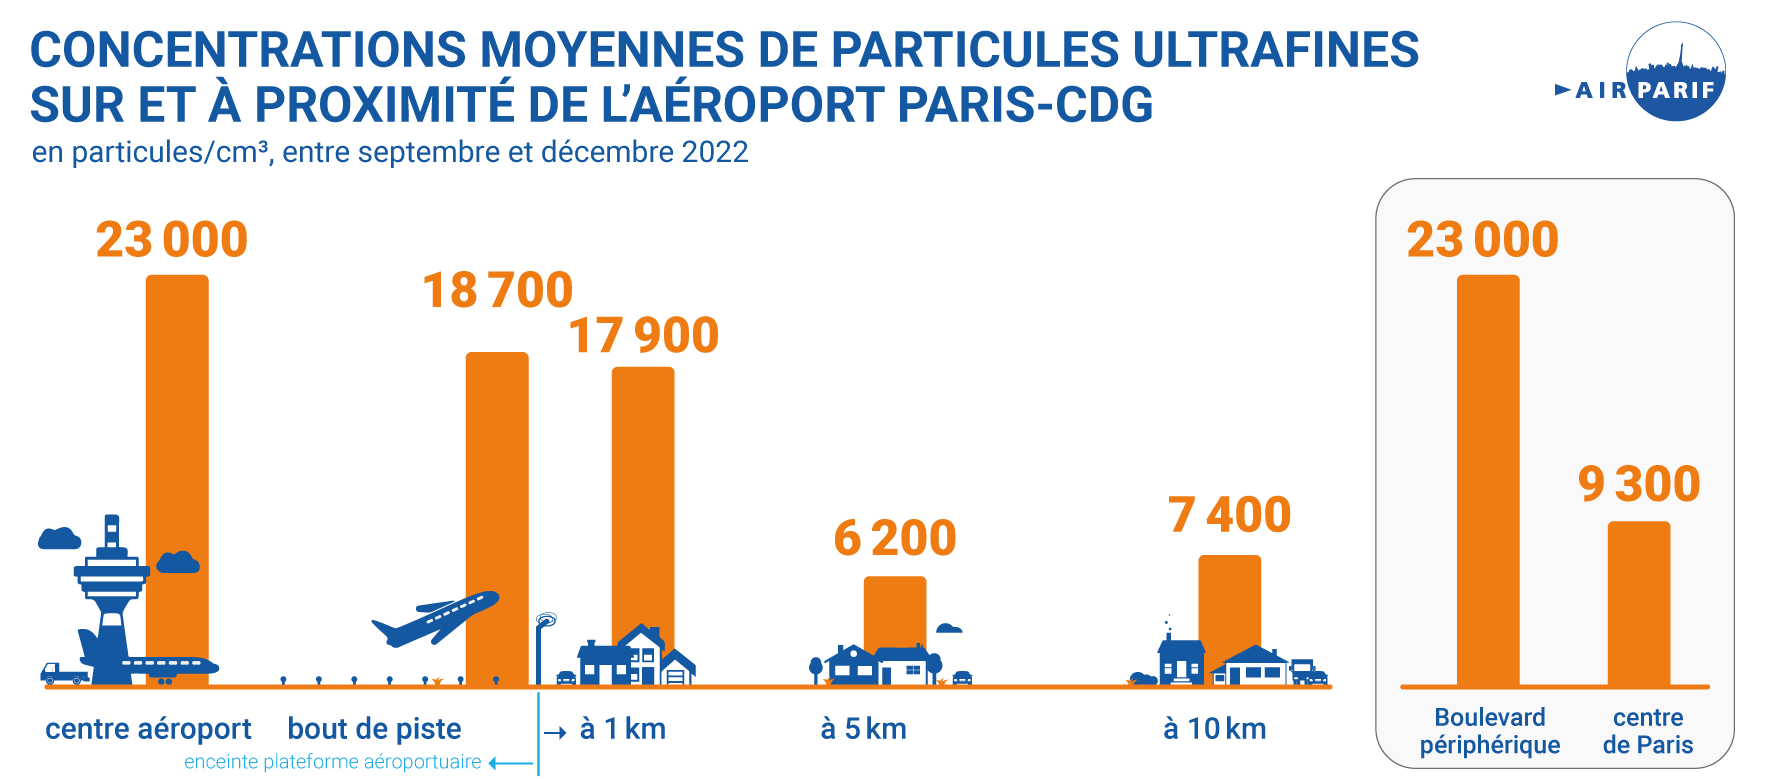 Concentrations moyennes de PUF sur et à proximité de l'aéroport Paris-CDG